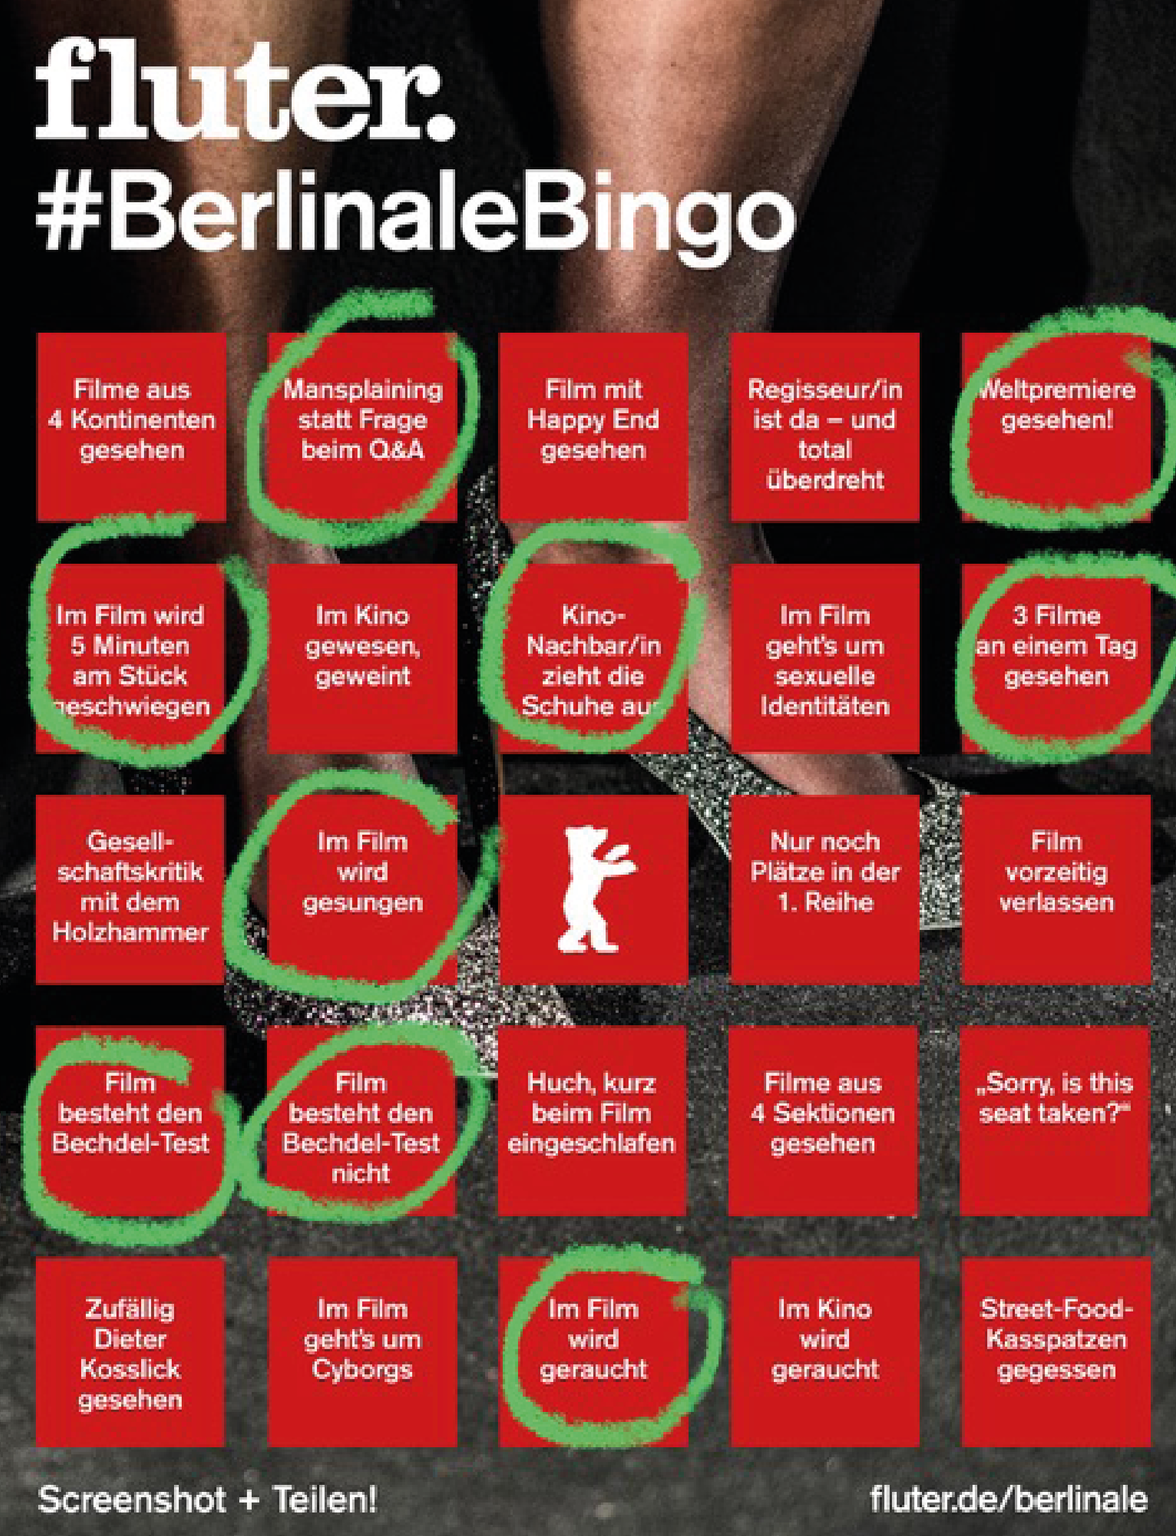 Berlinale-Bingo